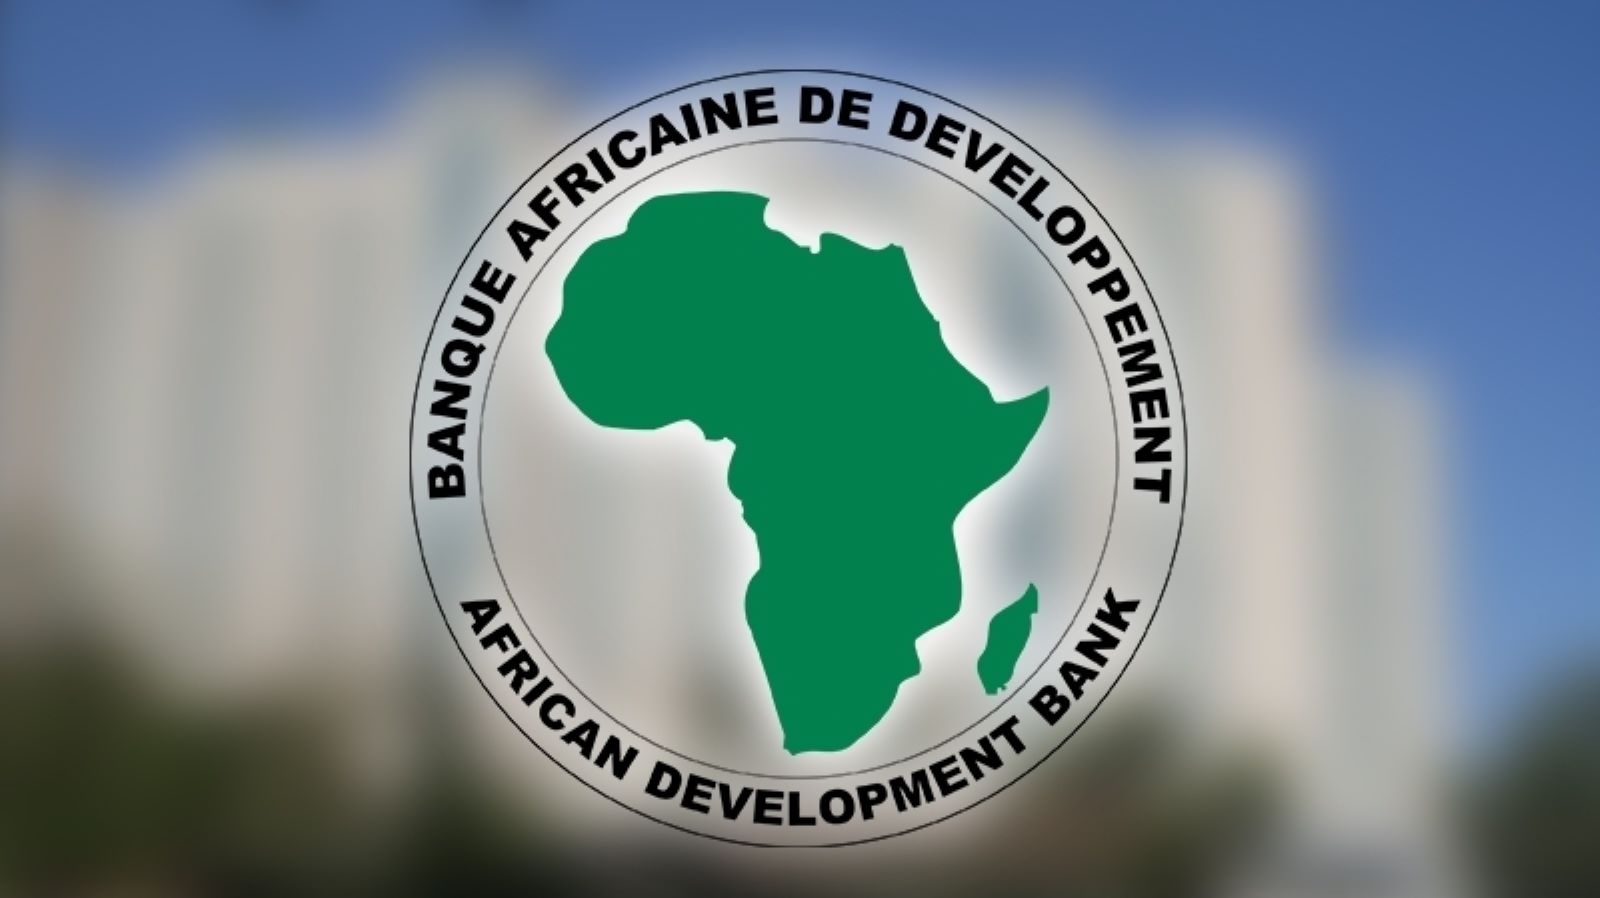 بنك التنمية الأفريقي يجمع 31 مليار دولار في منتدى استثماري